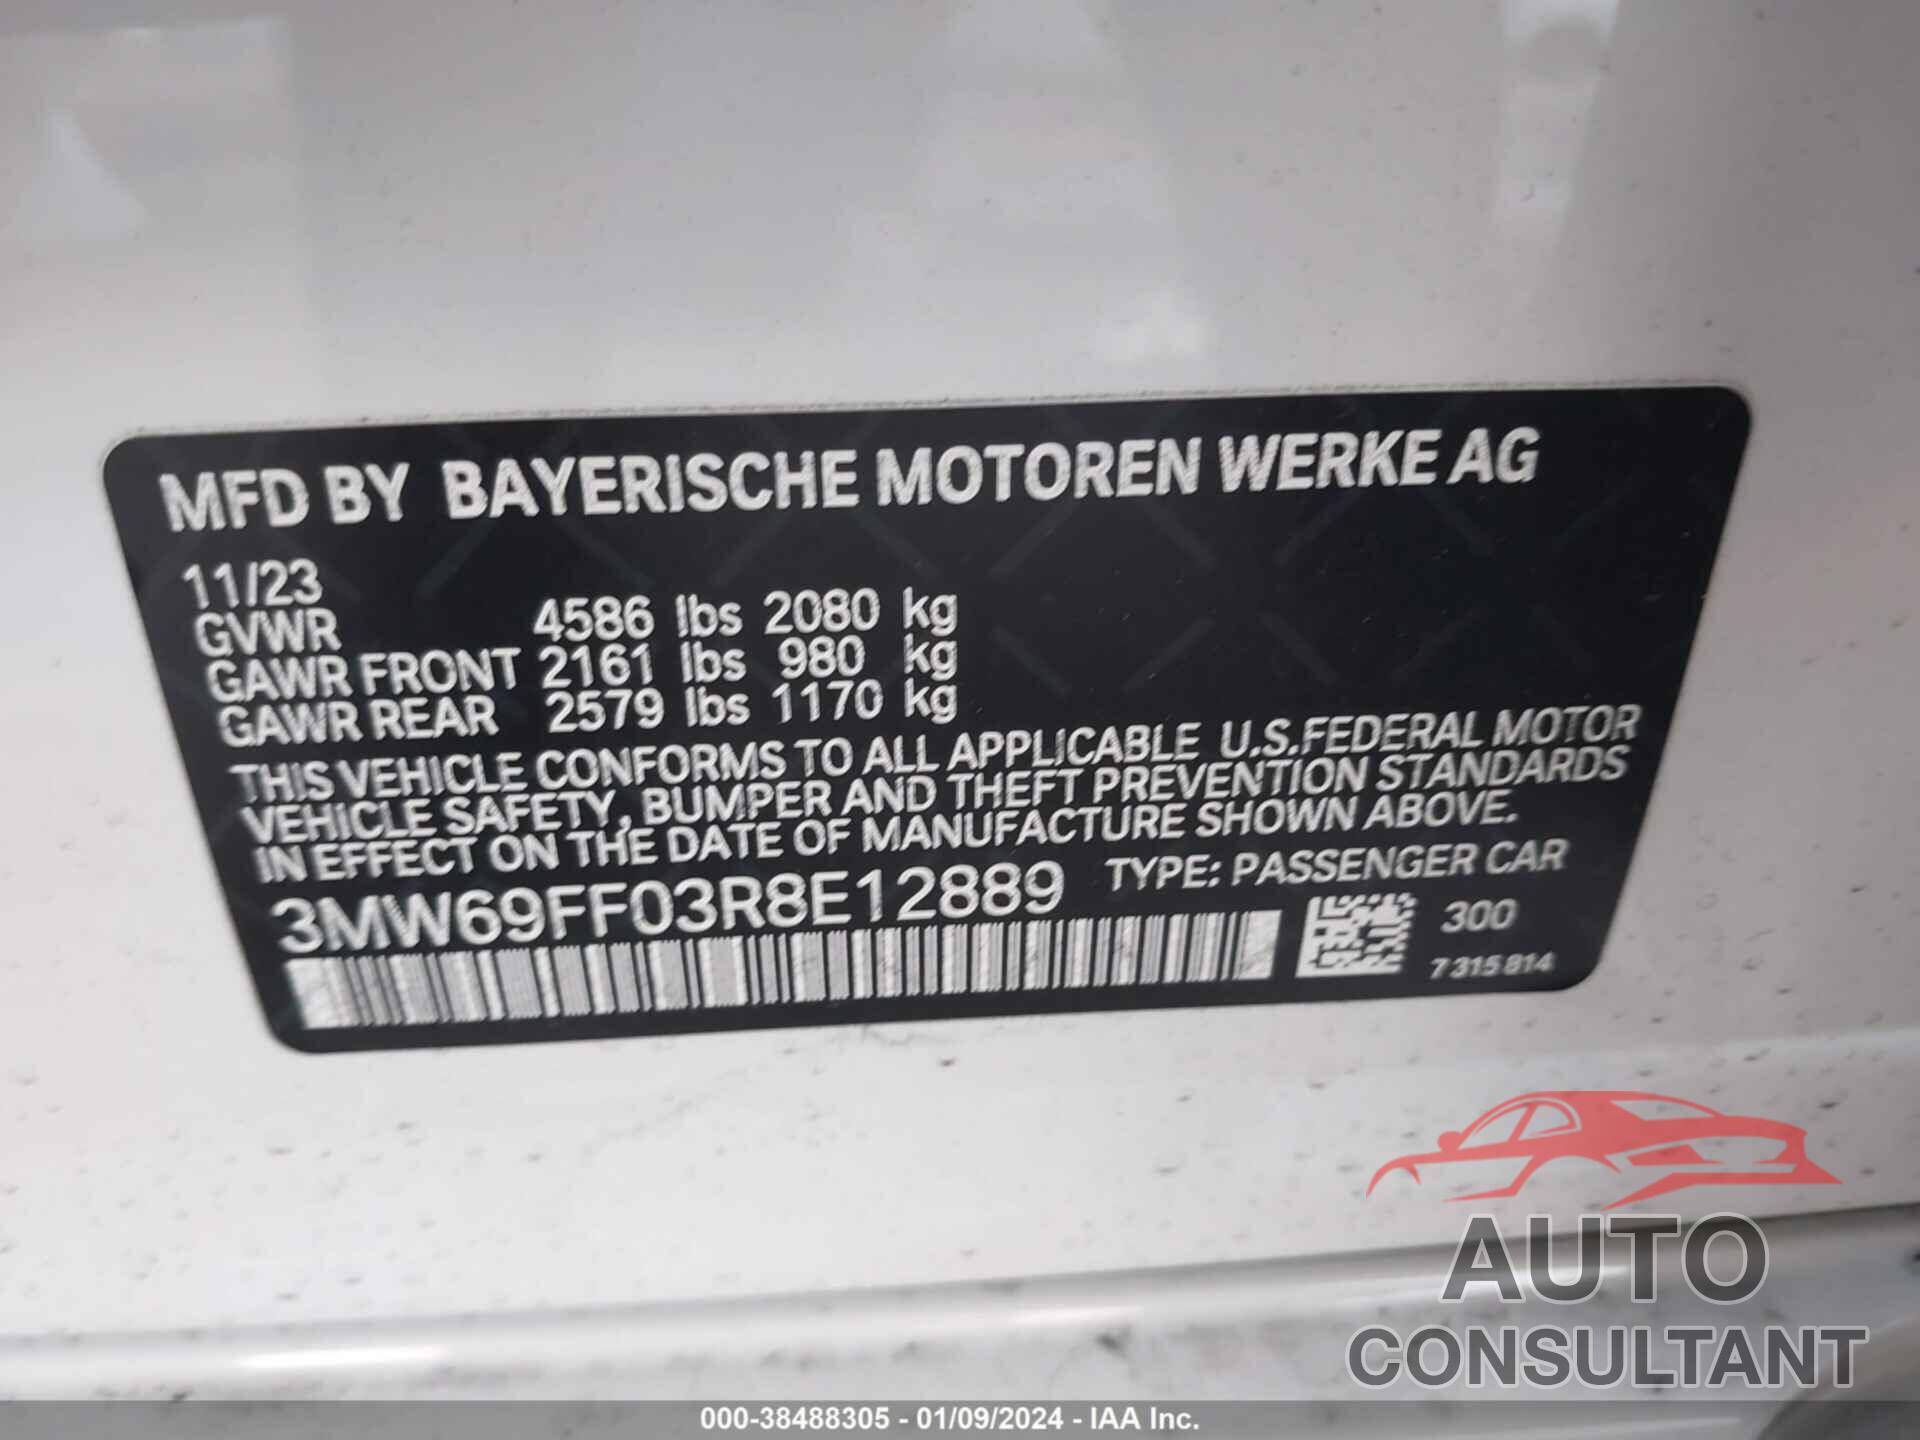 BMW 3 SERIES 2024 - 3MW69FF03R8E12889